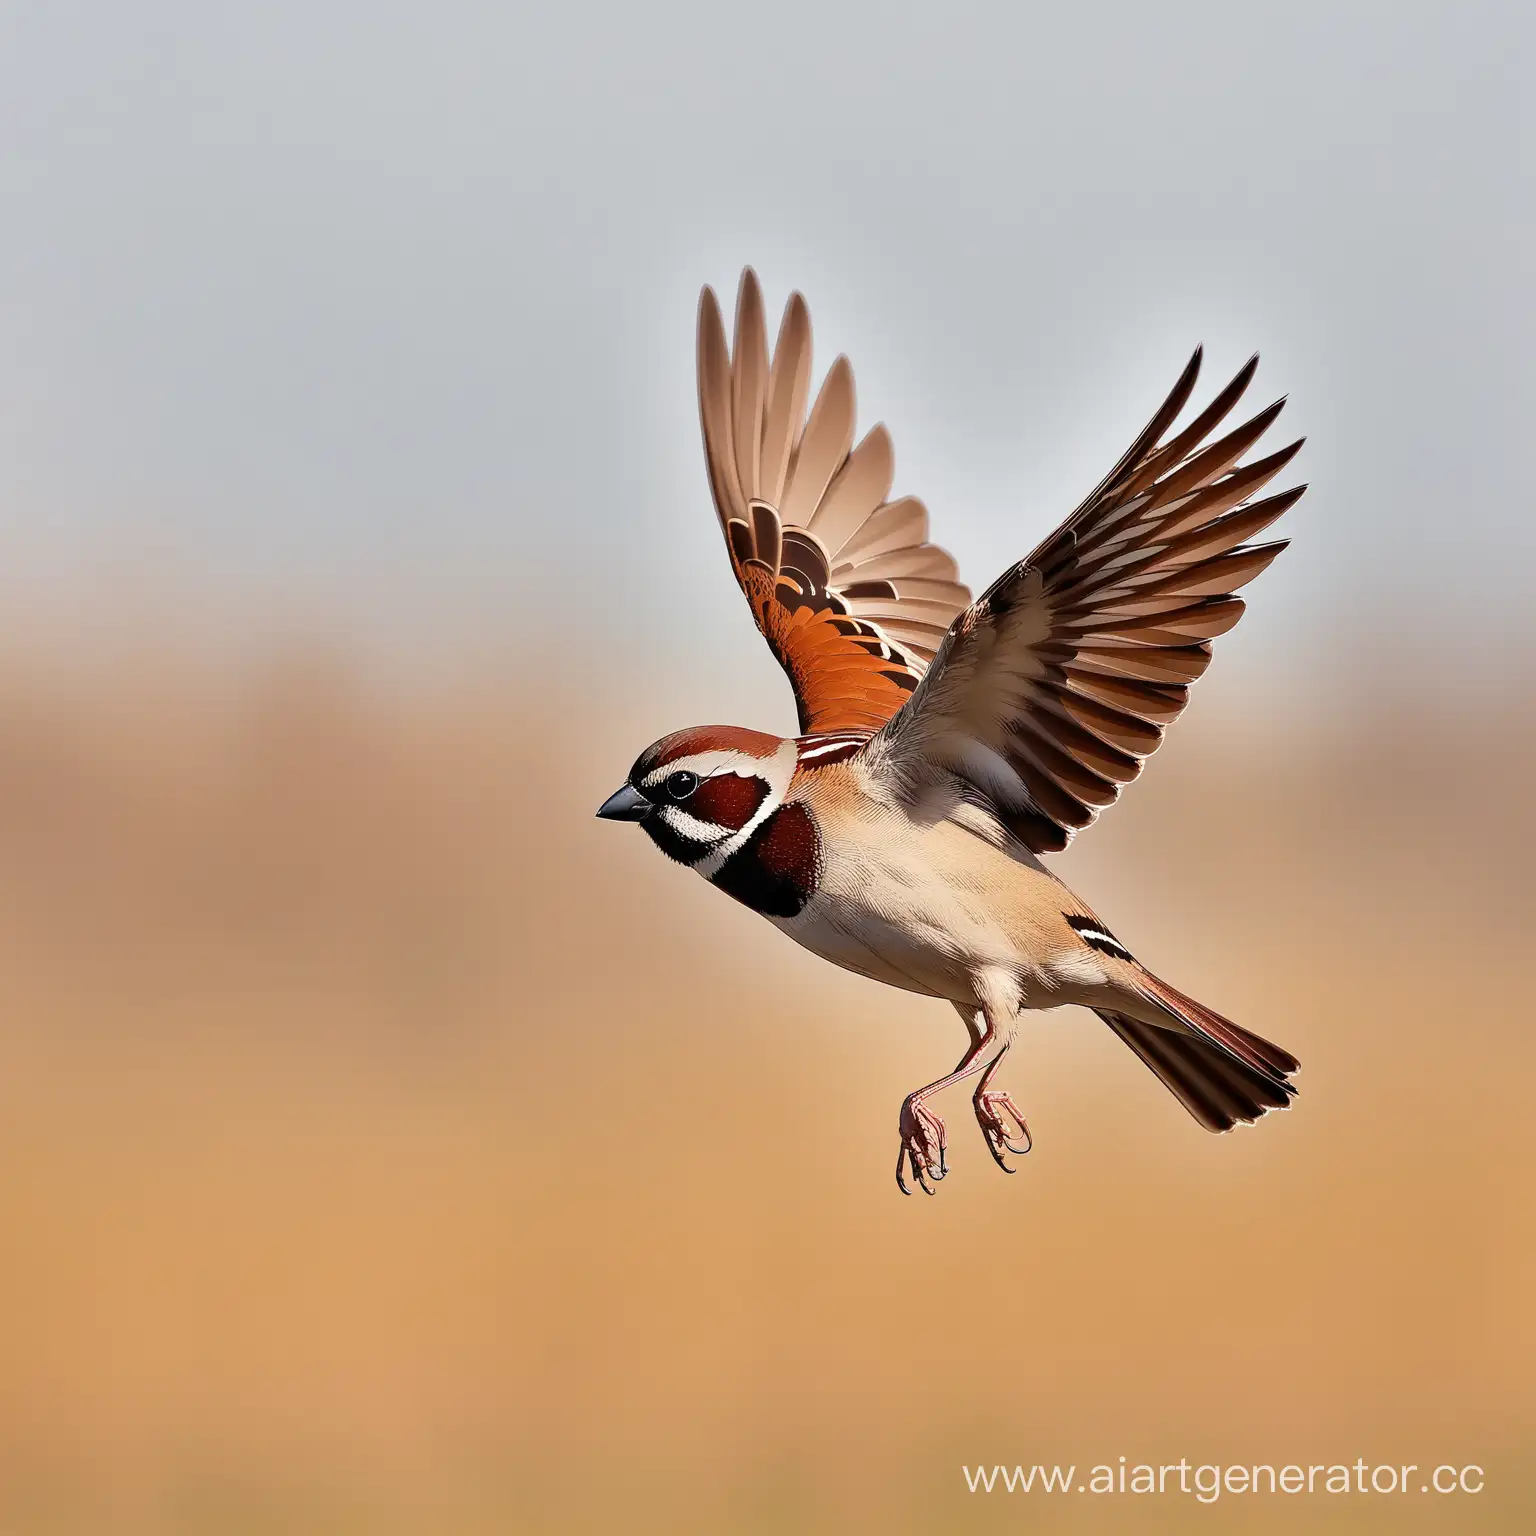 Graceful-Sparrow-Soaring-in-MidAir